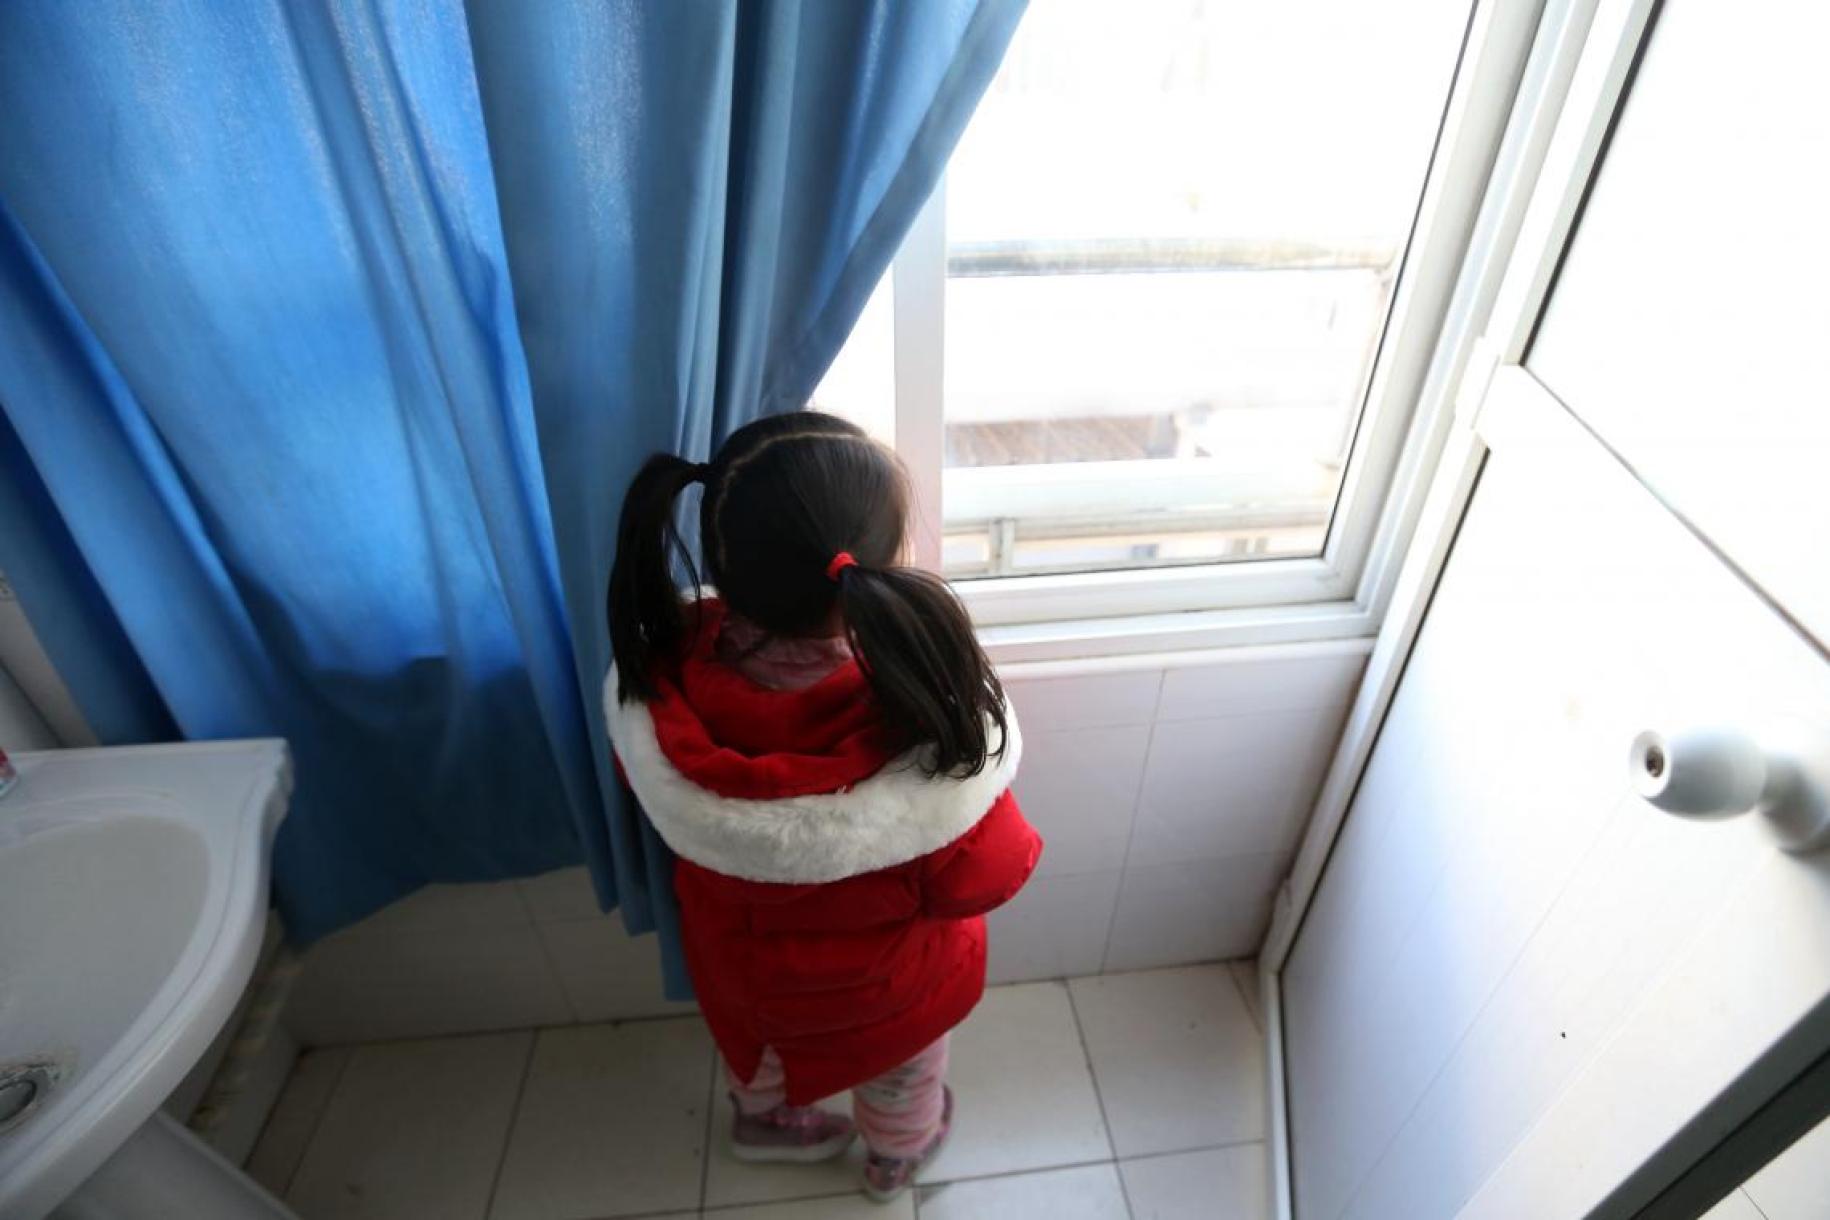 فتاة صغيرة تنظر من النافذة.